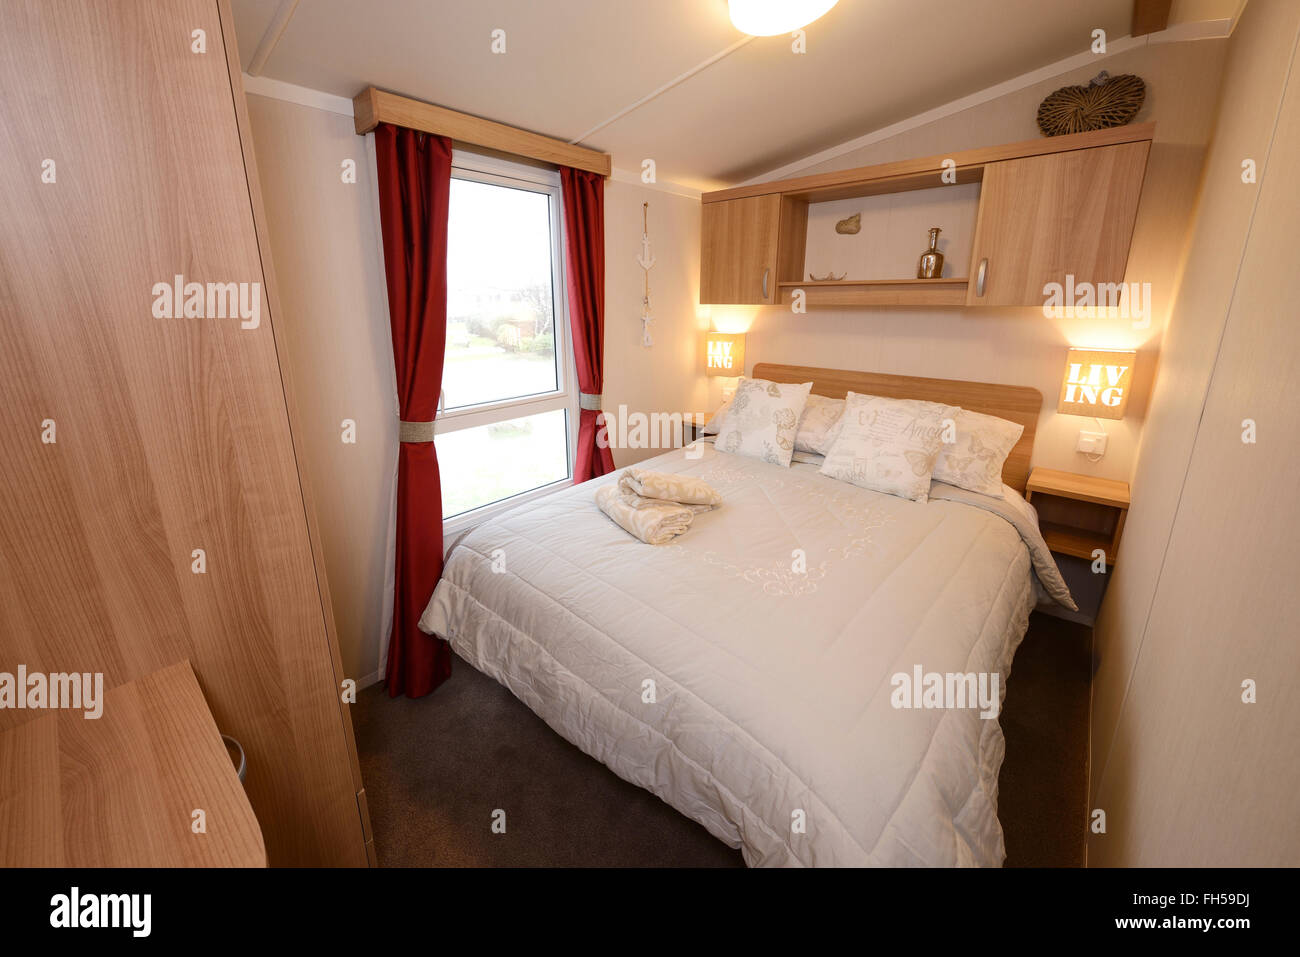 Dormitorio doble interior de una caravana estática Foto de stock